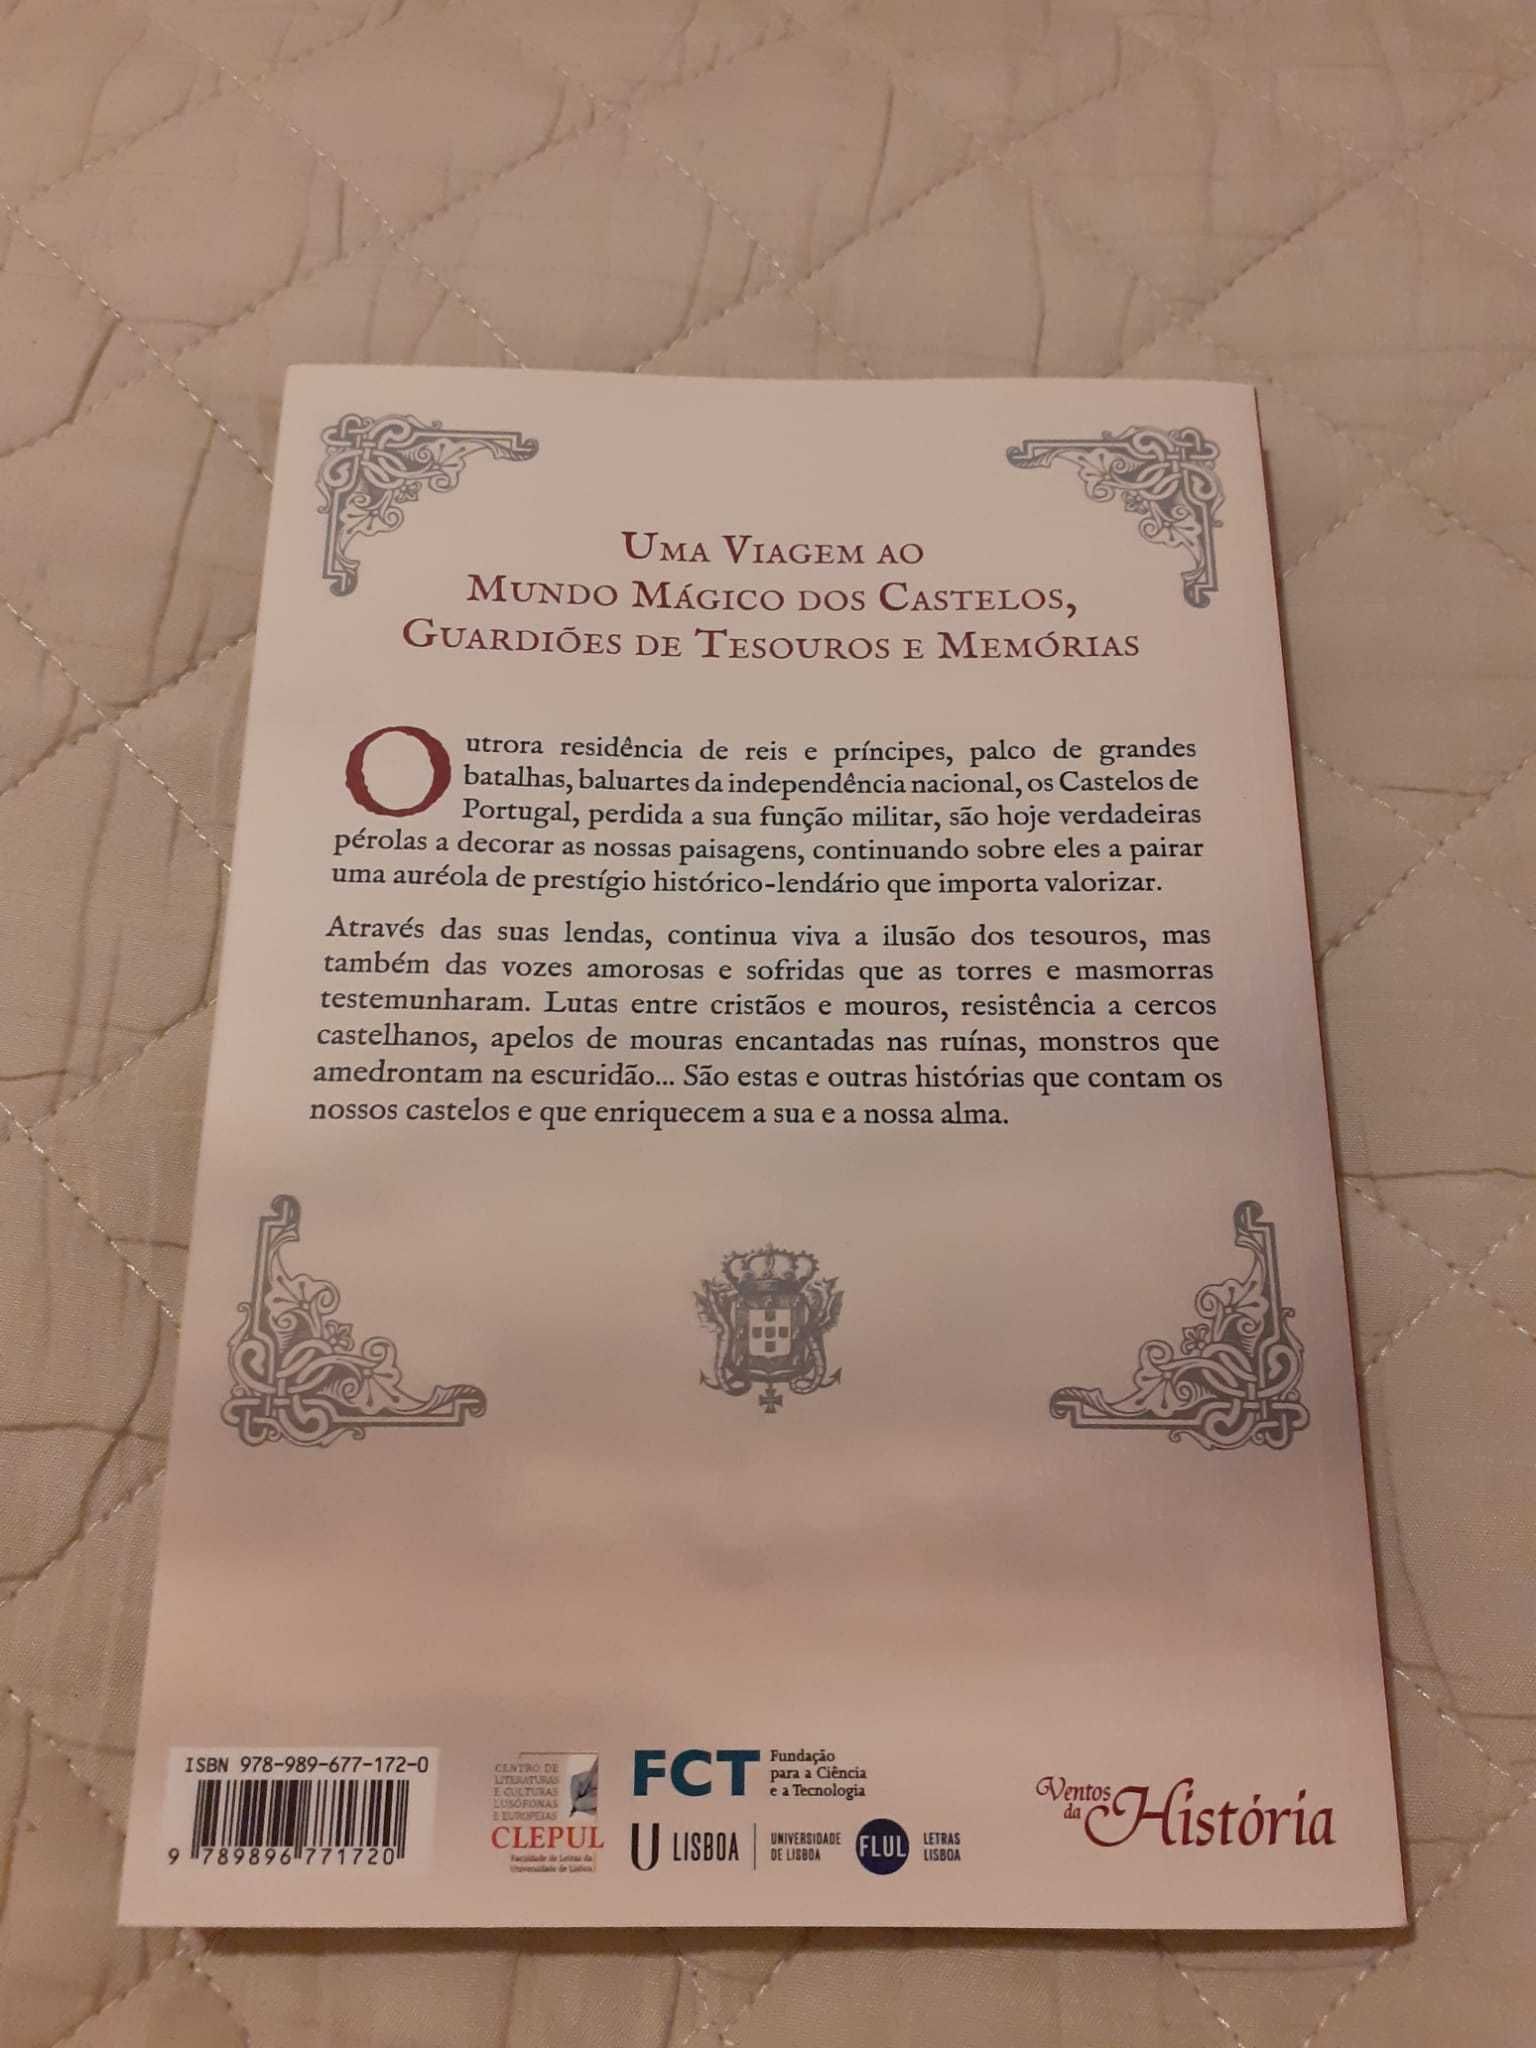 Livro "Lendas e Mitos dos Castelos de Portugal"